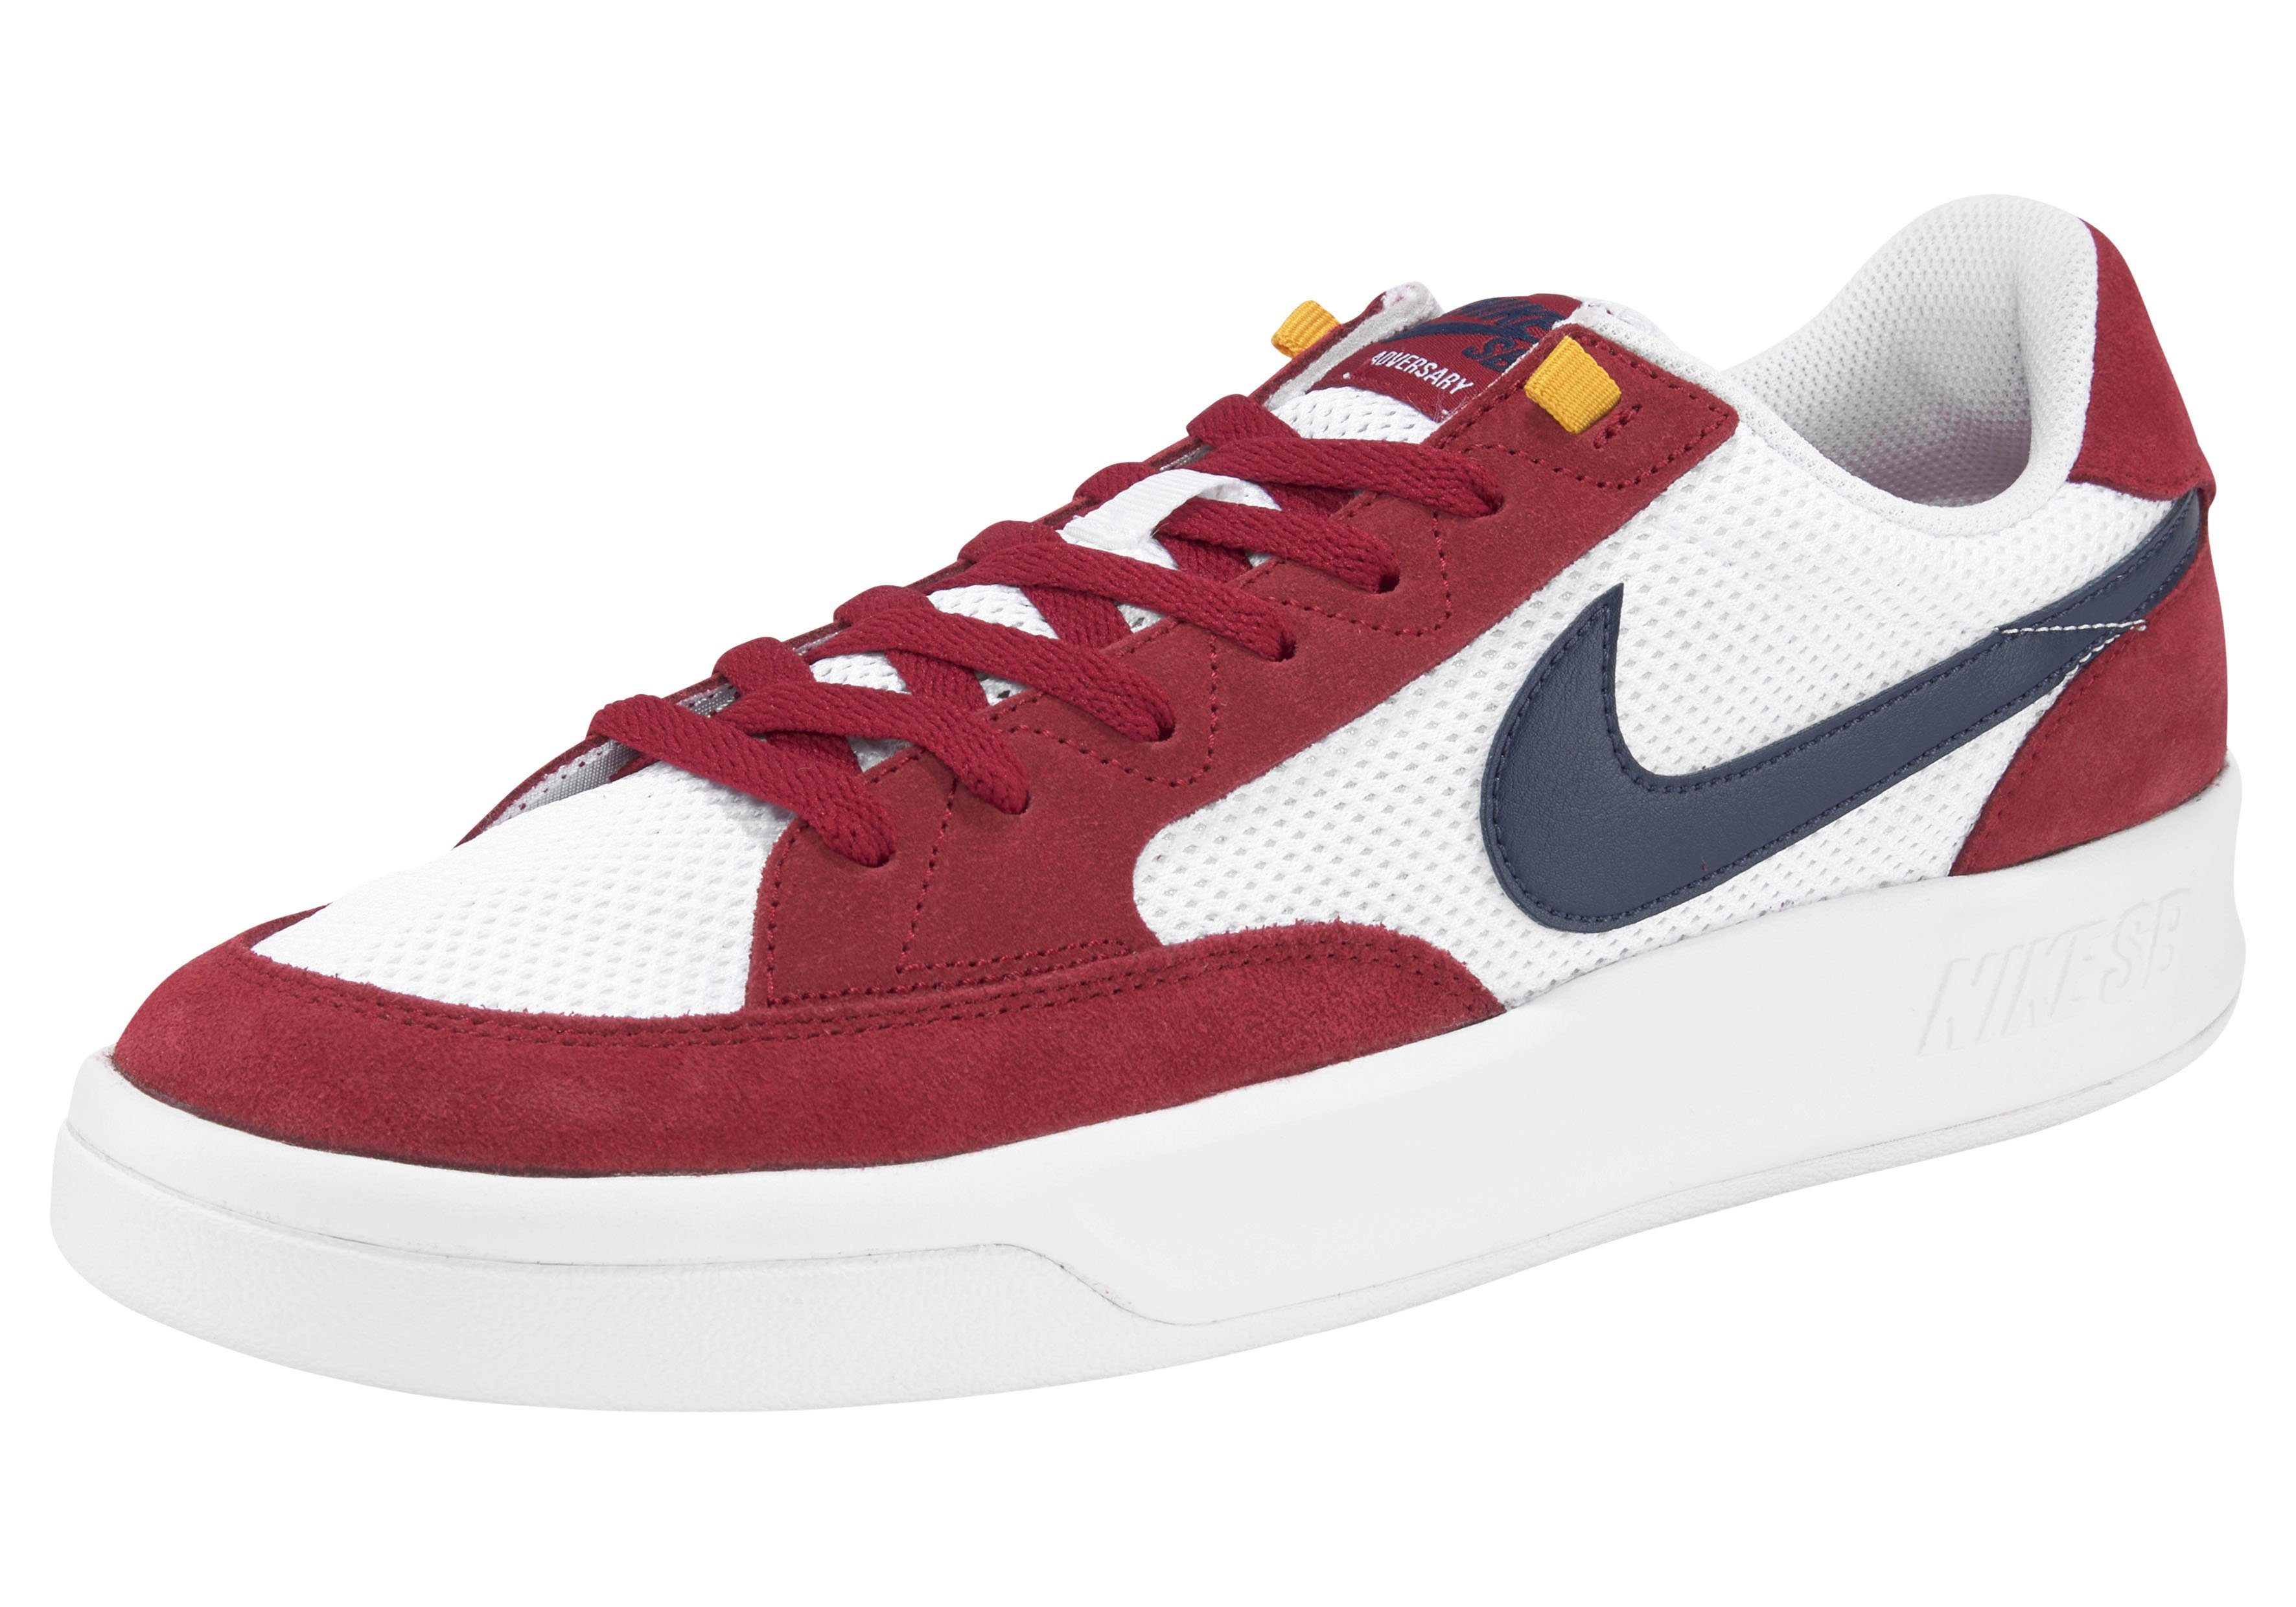 Rote Nike Schuhe online kaufen | OTTO